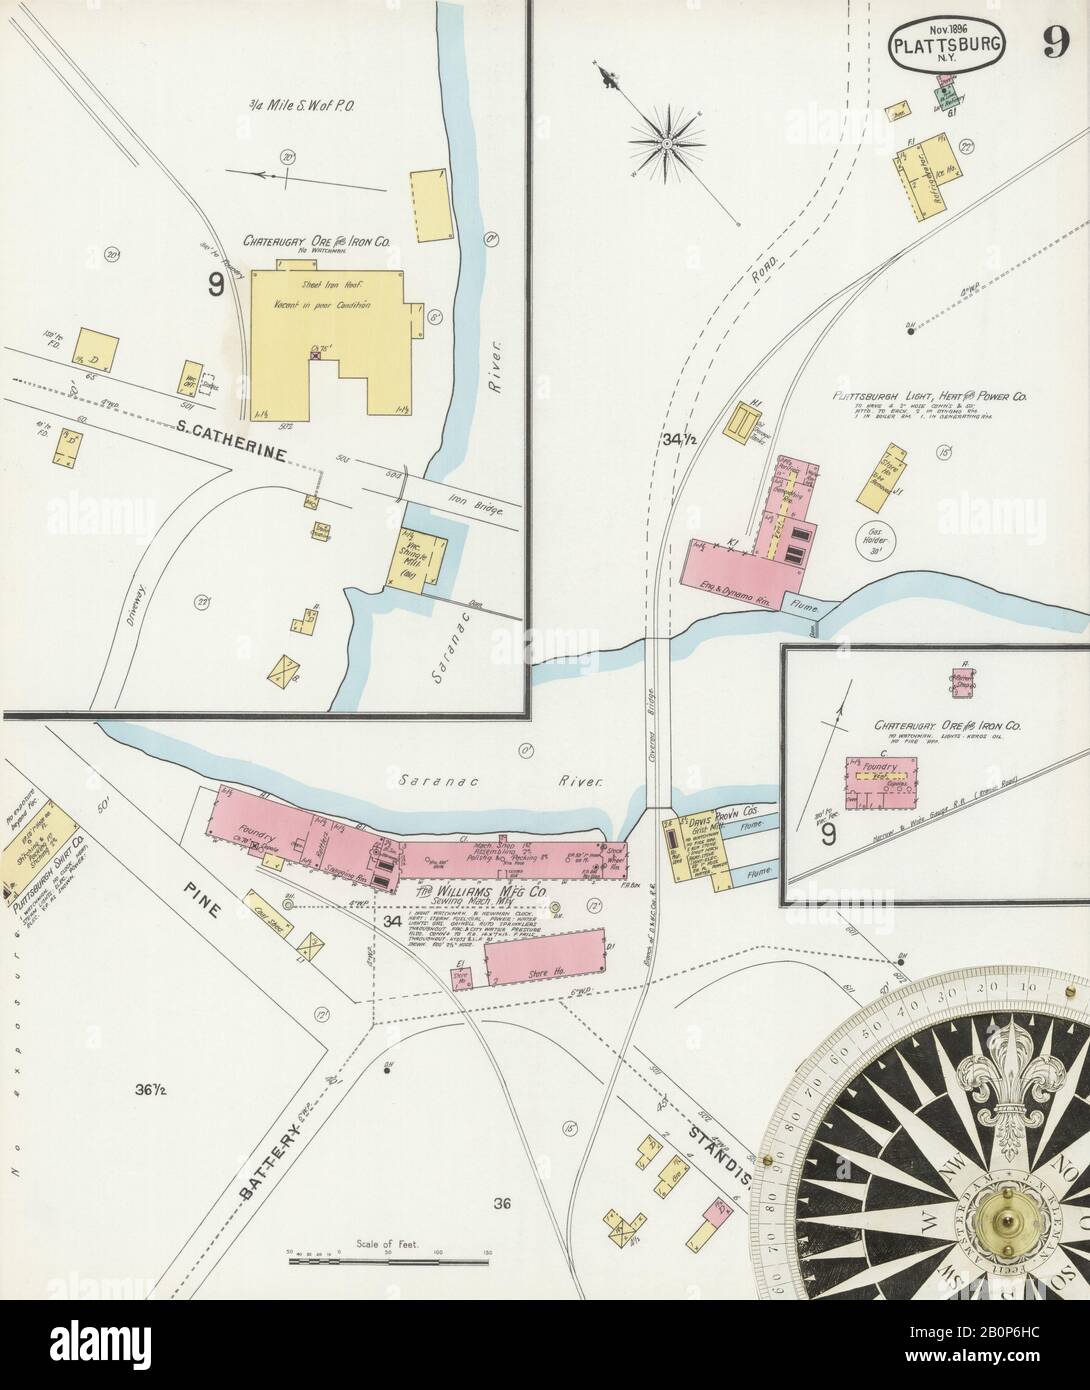 Bild 9 von Sanborn Fire Insurance Map aus Plattsburg, Clinton County, New York. Nov. 11 Blatt(e), Amerika, Straßenkarte mit einem Kompass Aus Dem 19. Jahrhundert Stockfoto